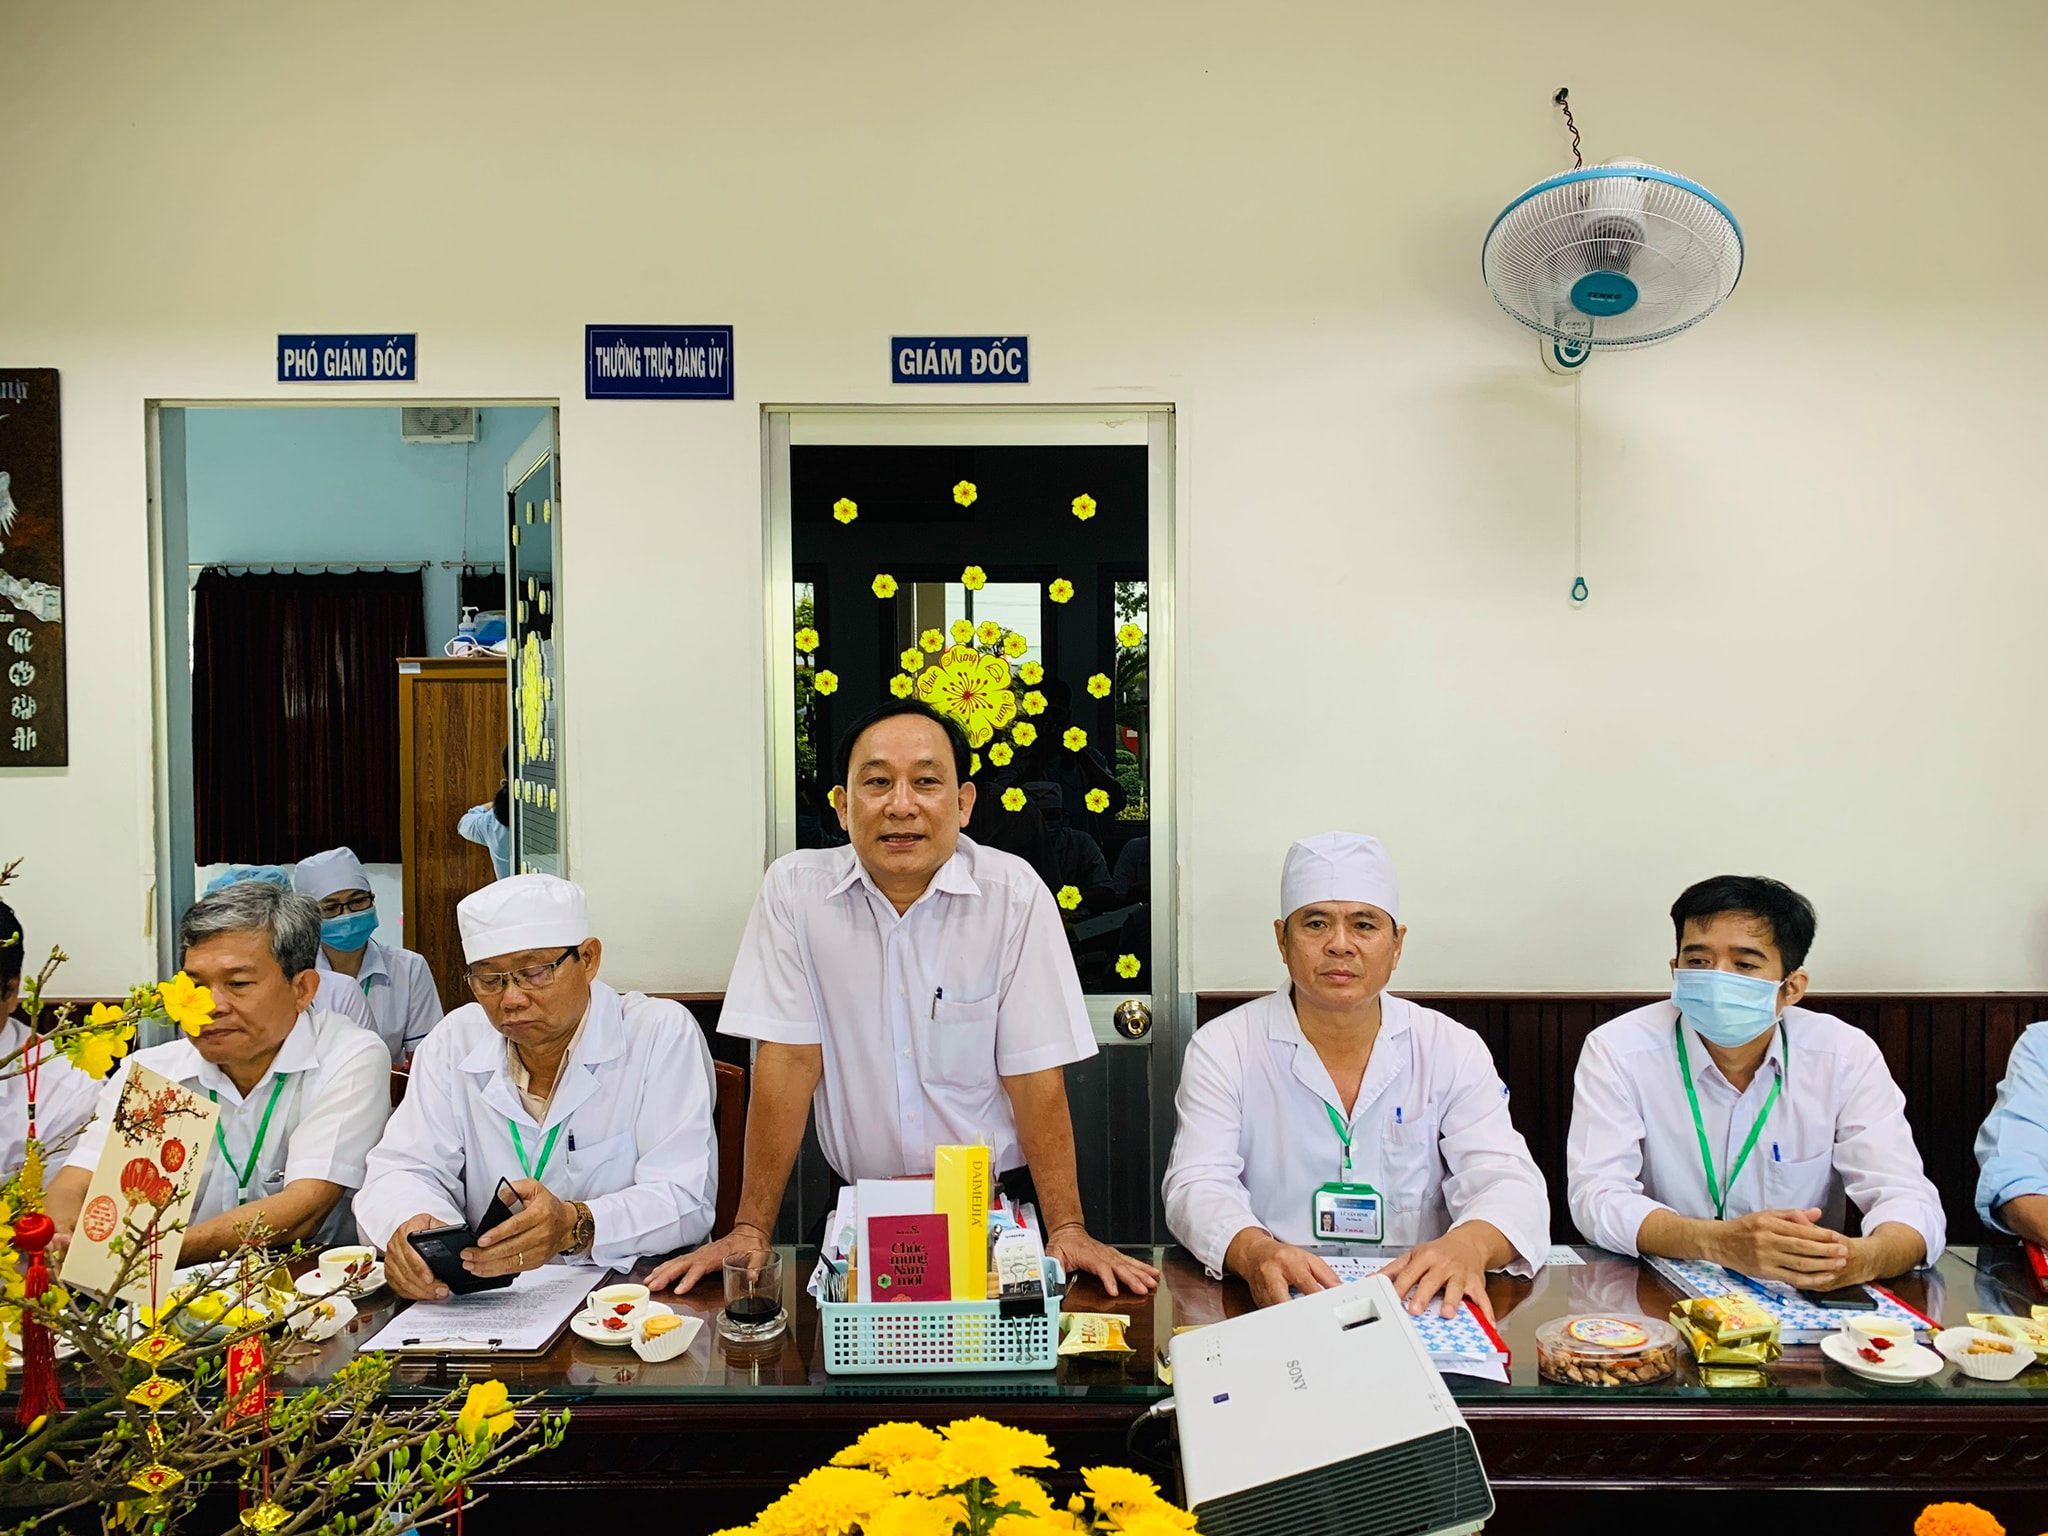 Bác sĩ Nguyễn Văn Ngưu là thầy thuốc có năng lực.jpg